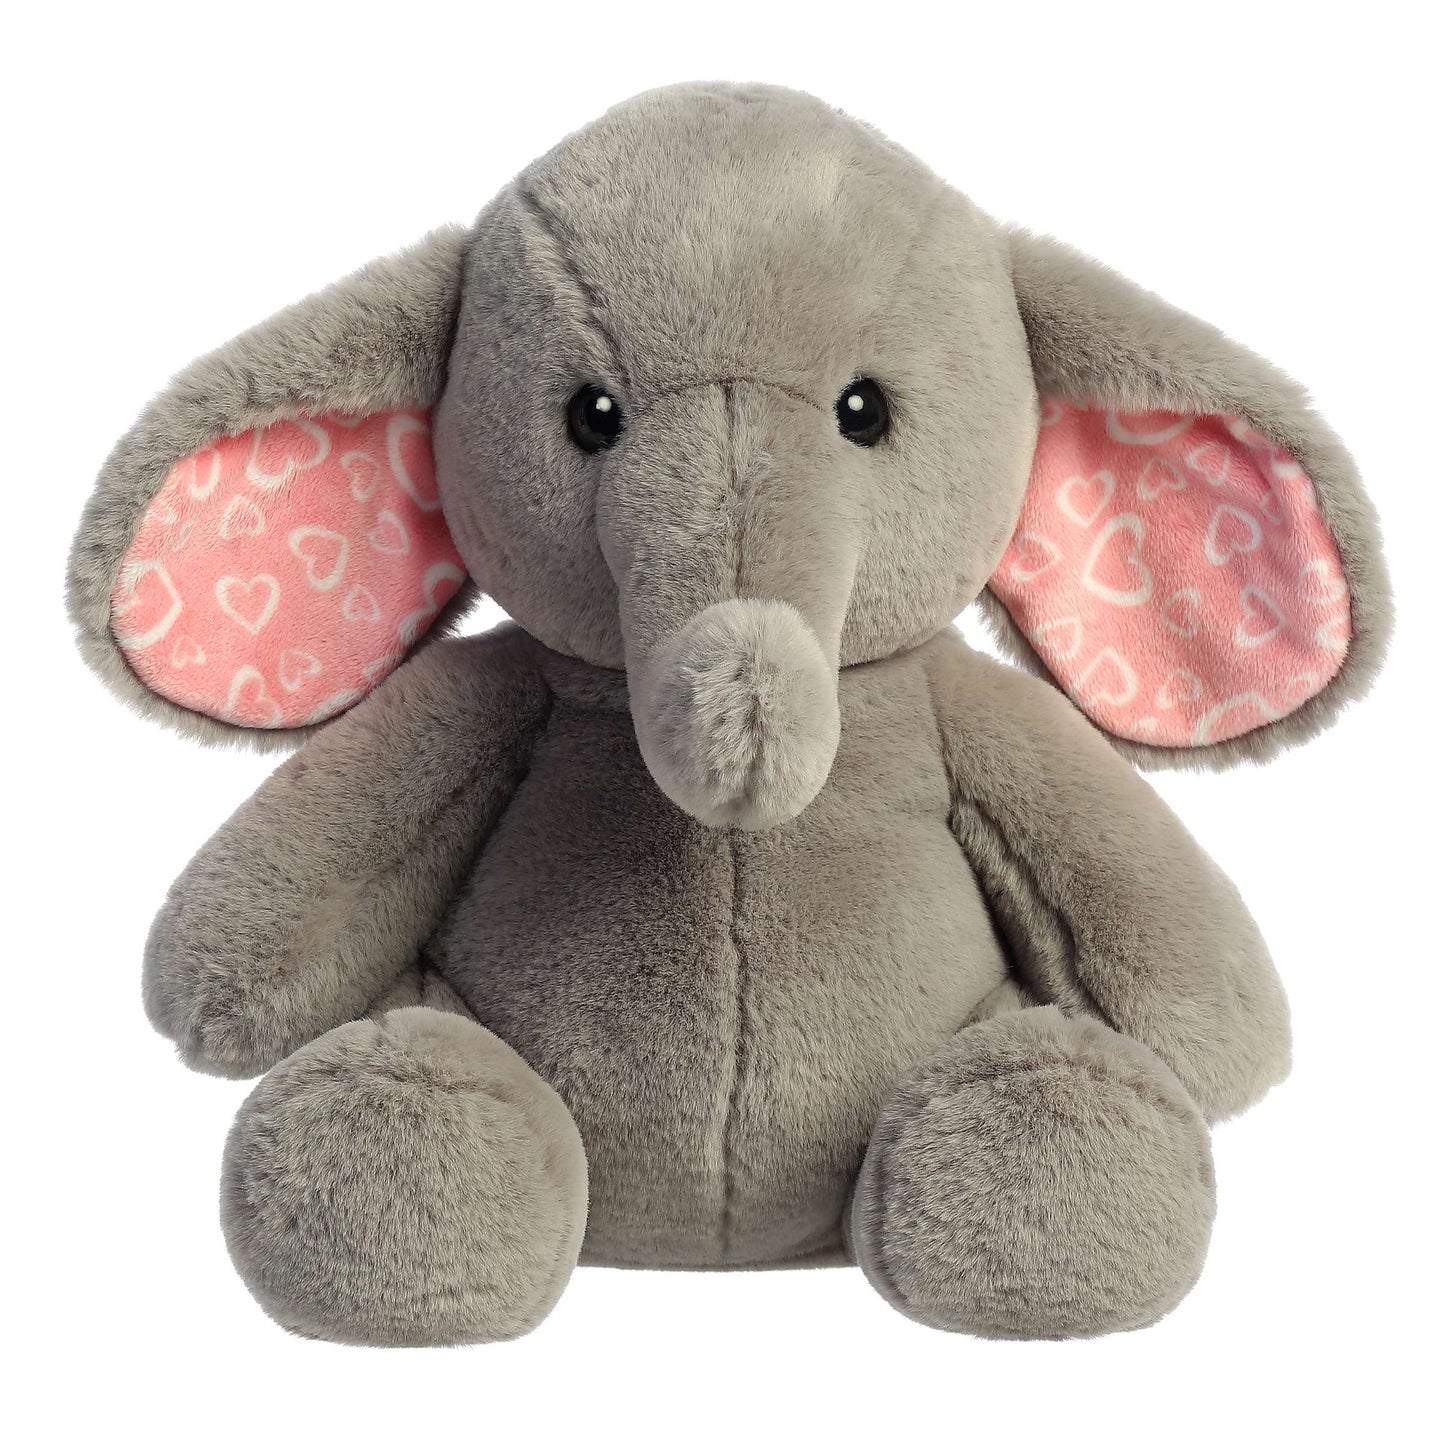 13" Lola Elephant